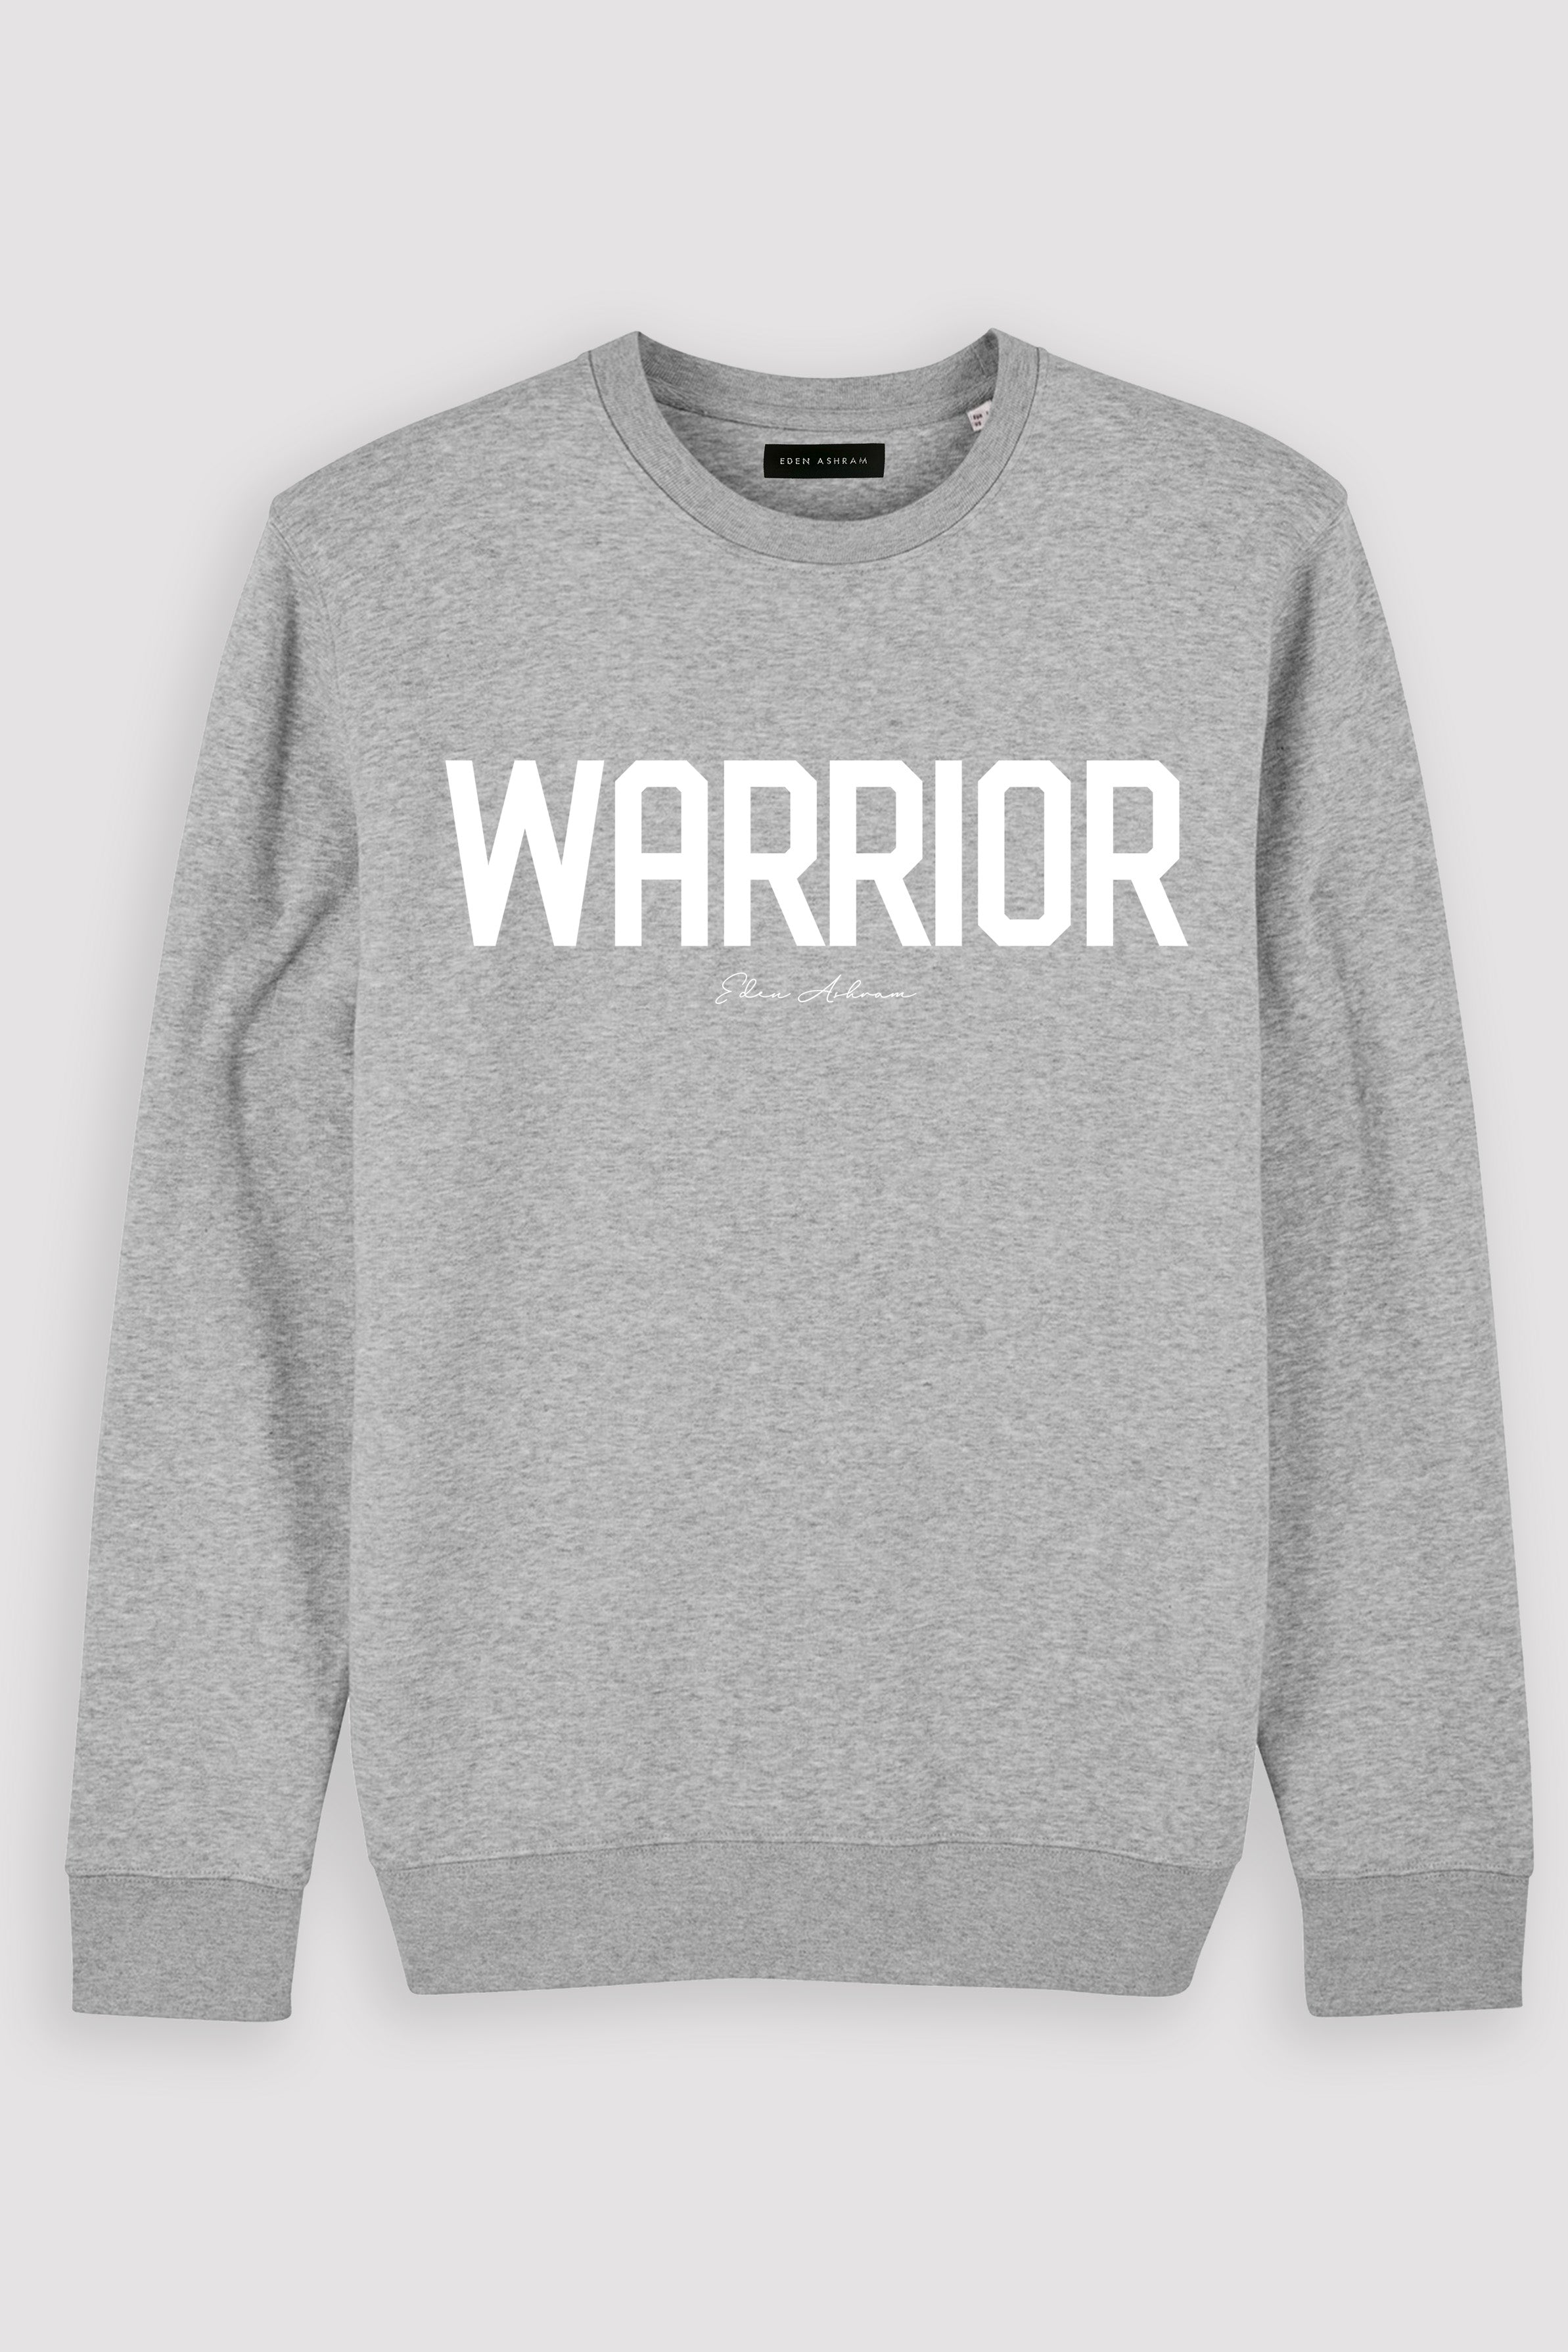 EDEN ASHRAM Warrior Premium Crew Neck Sweatshirt Heather Grey